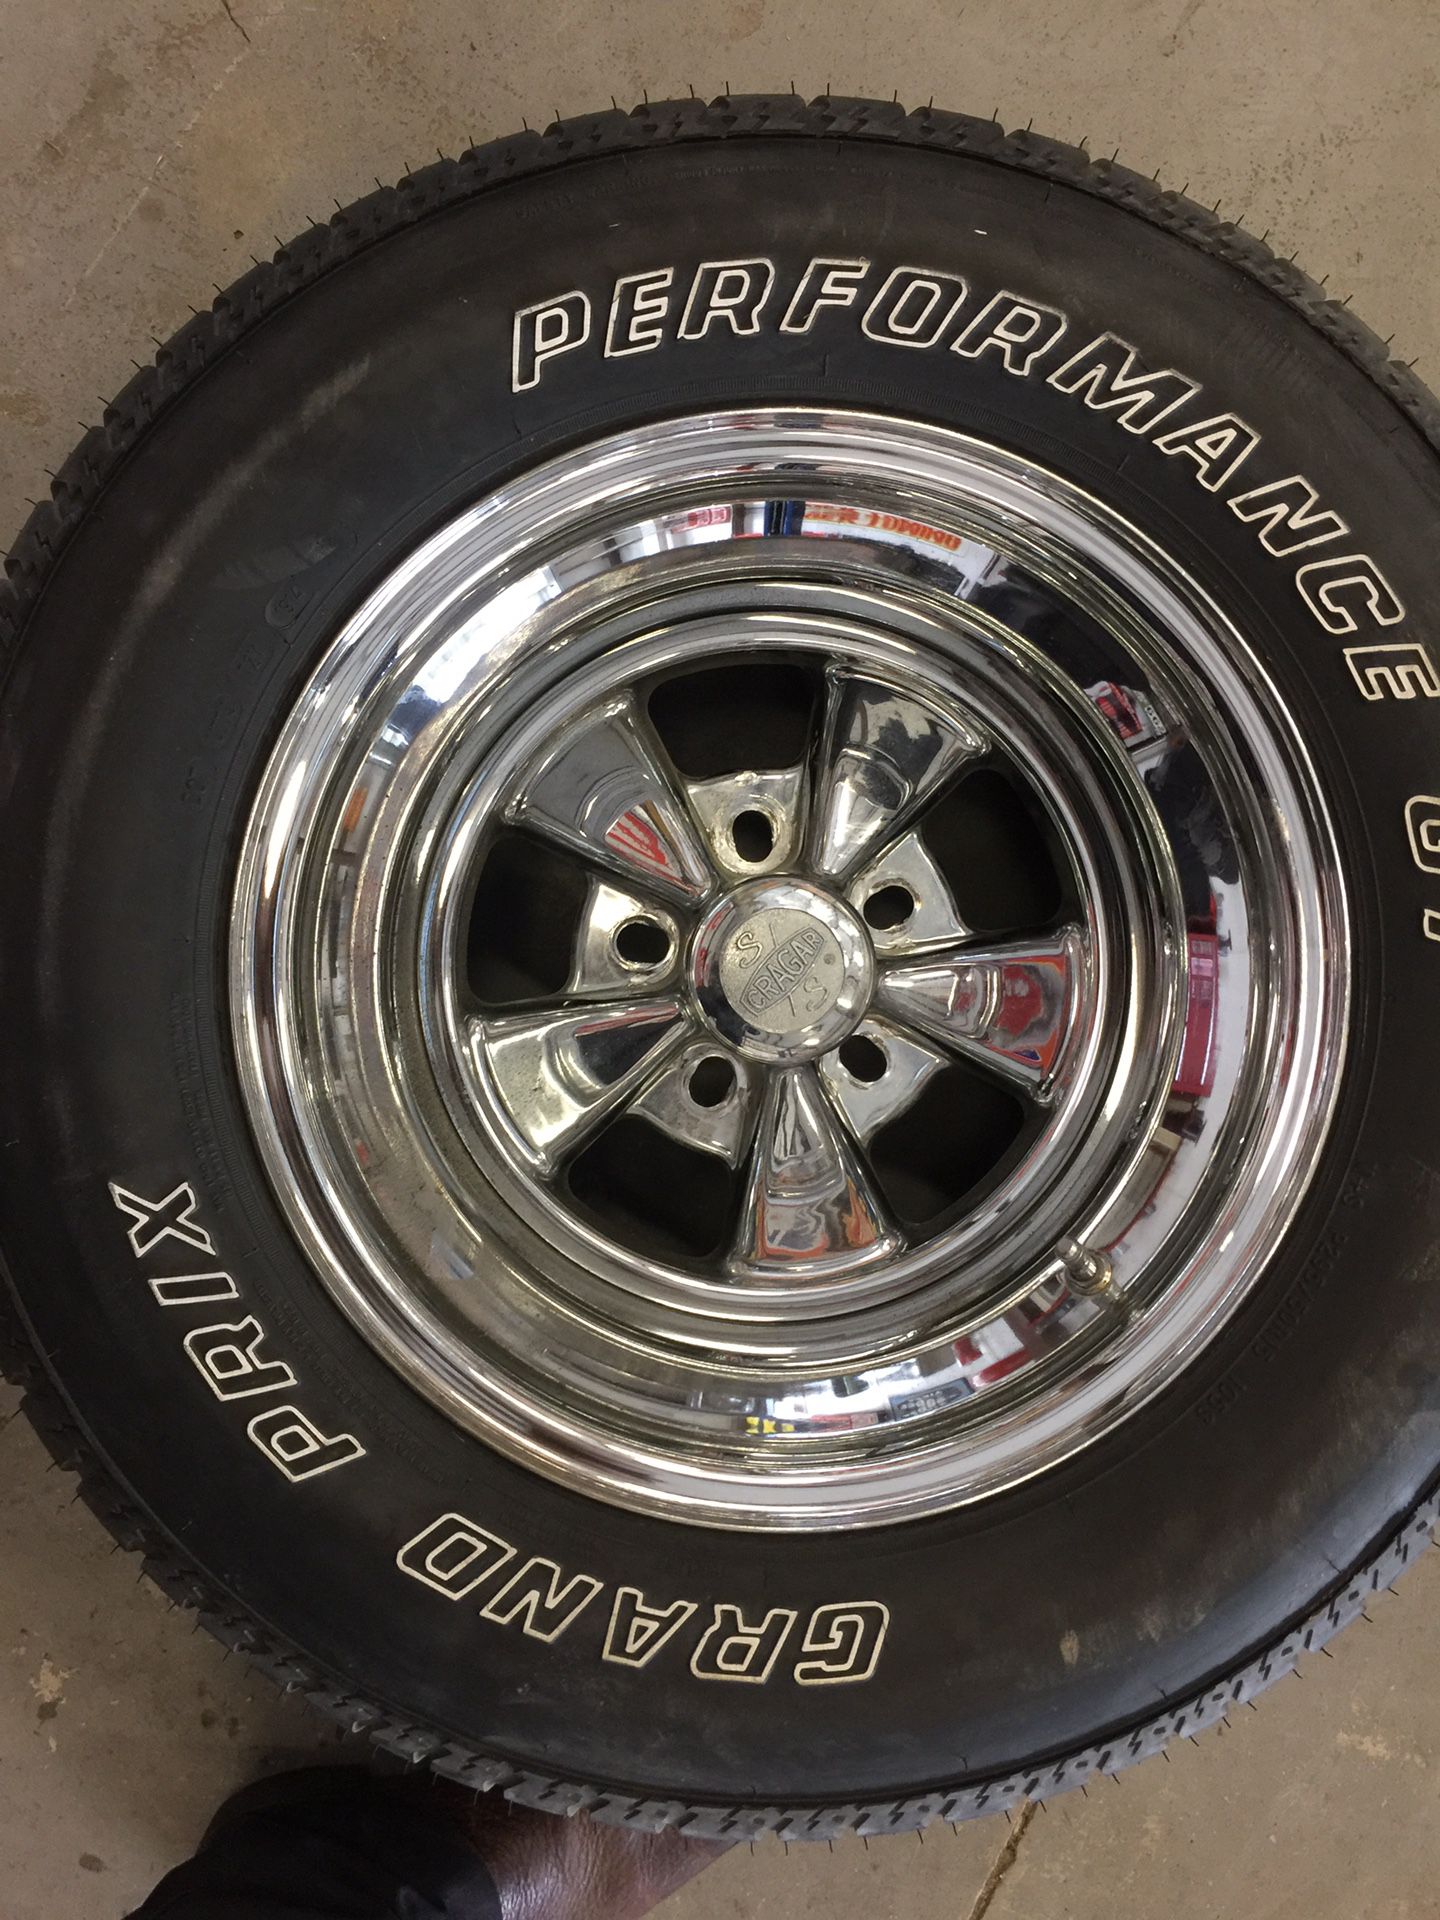 15x10 cragar wheels with 295/50/15 tires